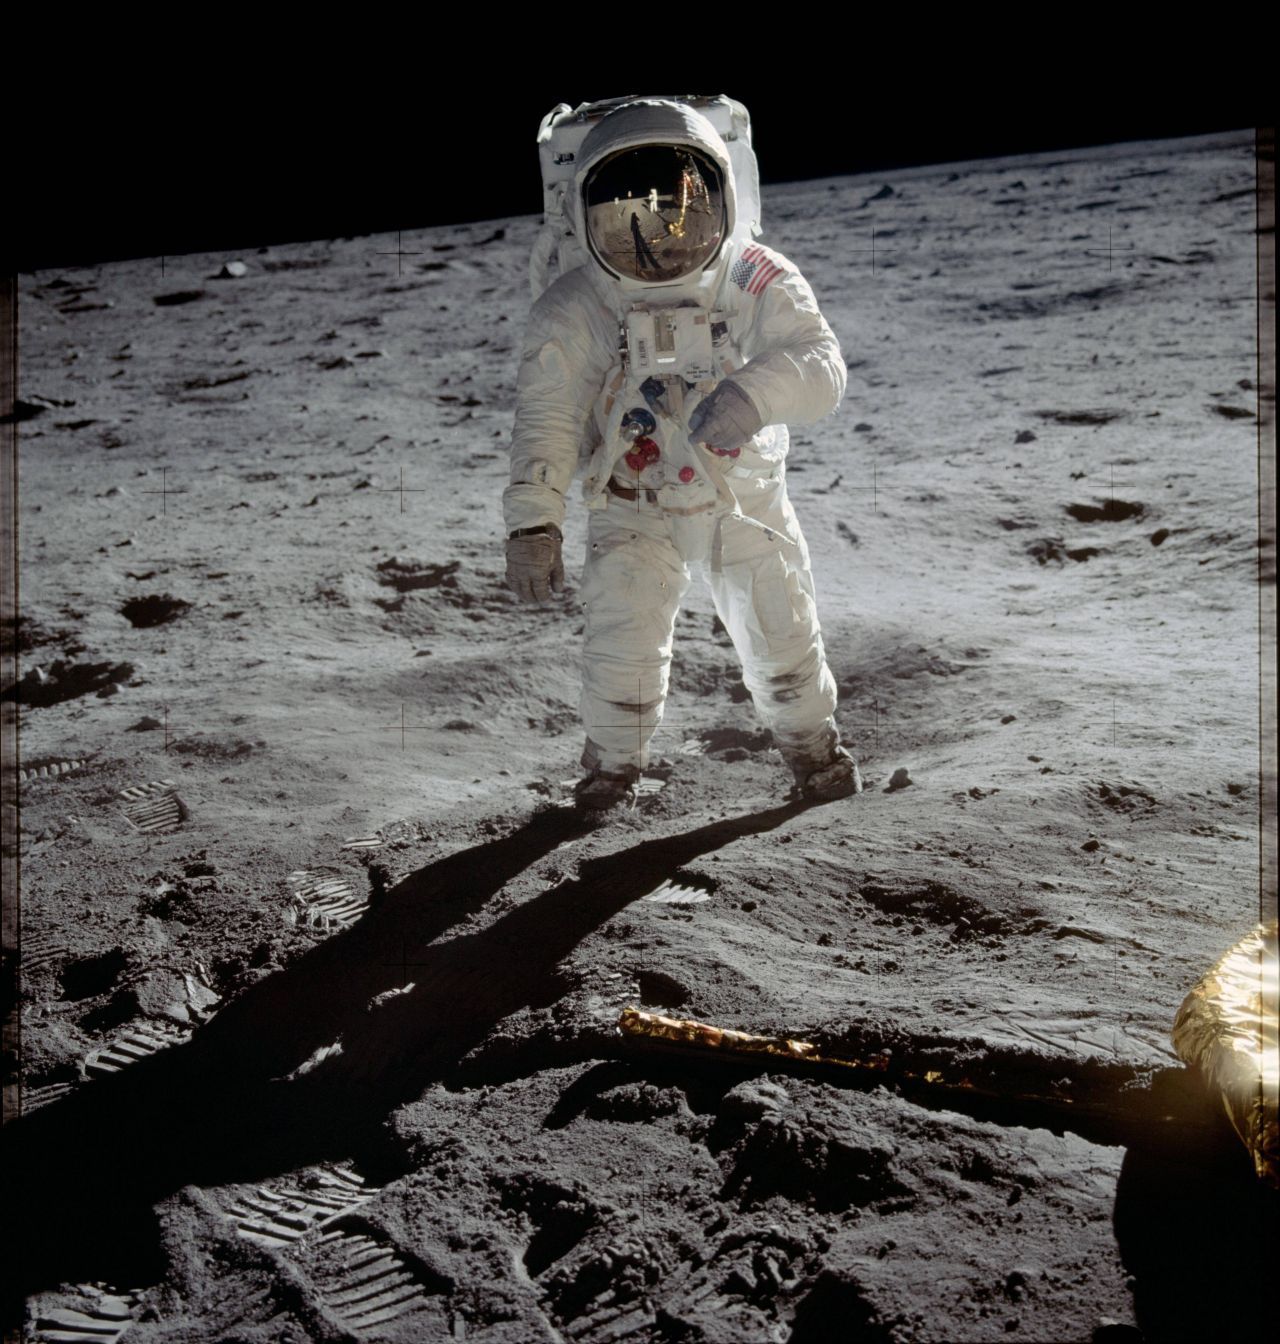 Buzz Aldrin auf dem Mond, fotografiert von Neil Armstrong. Im Helm spiegelt sich die Mond-Landefähre, im Vordergrund sind Fußspuren zu sehen.